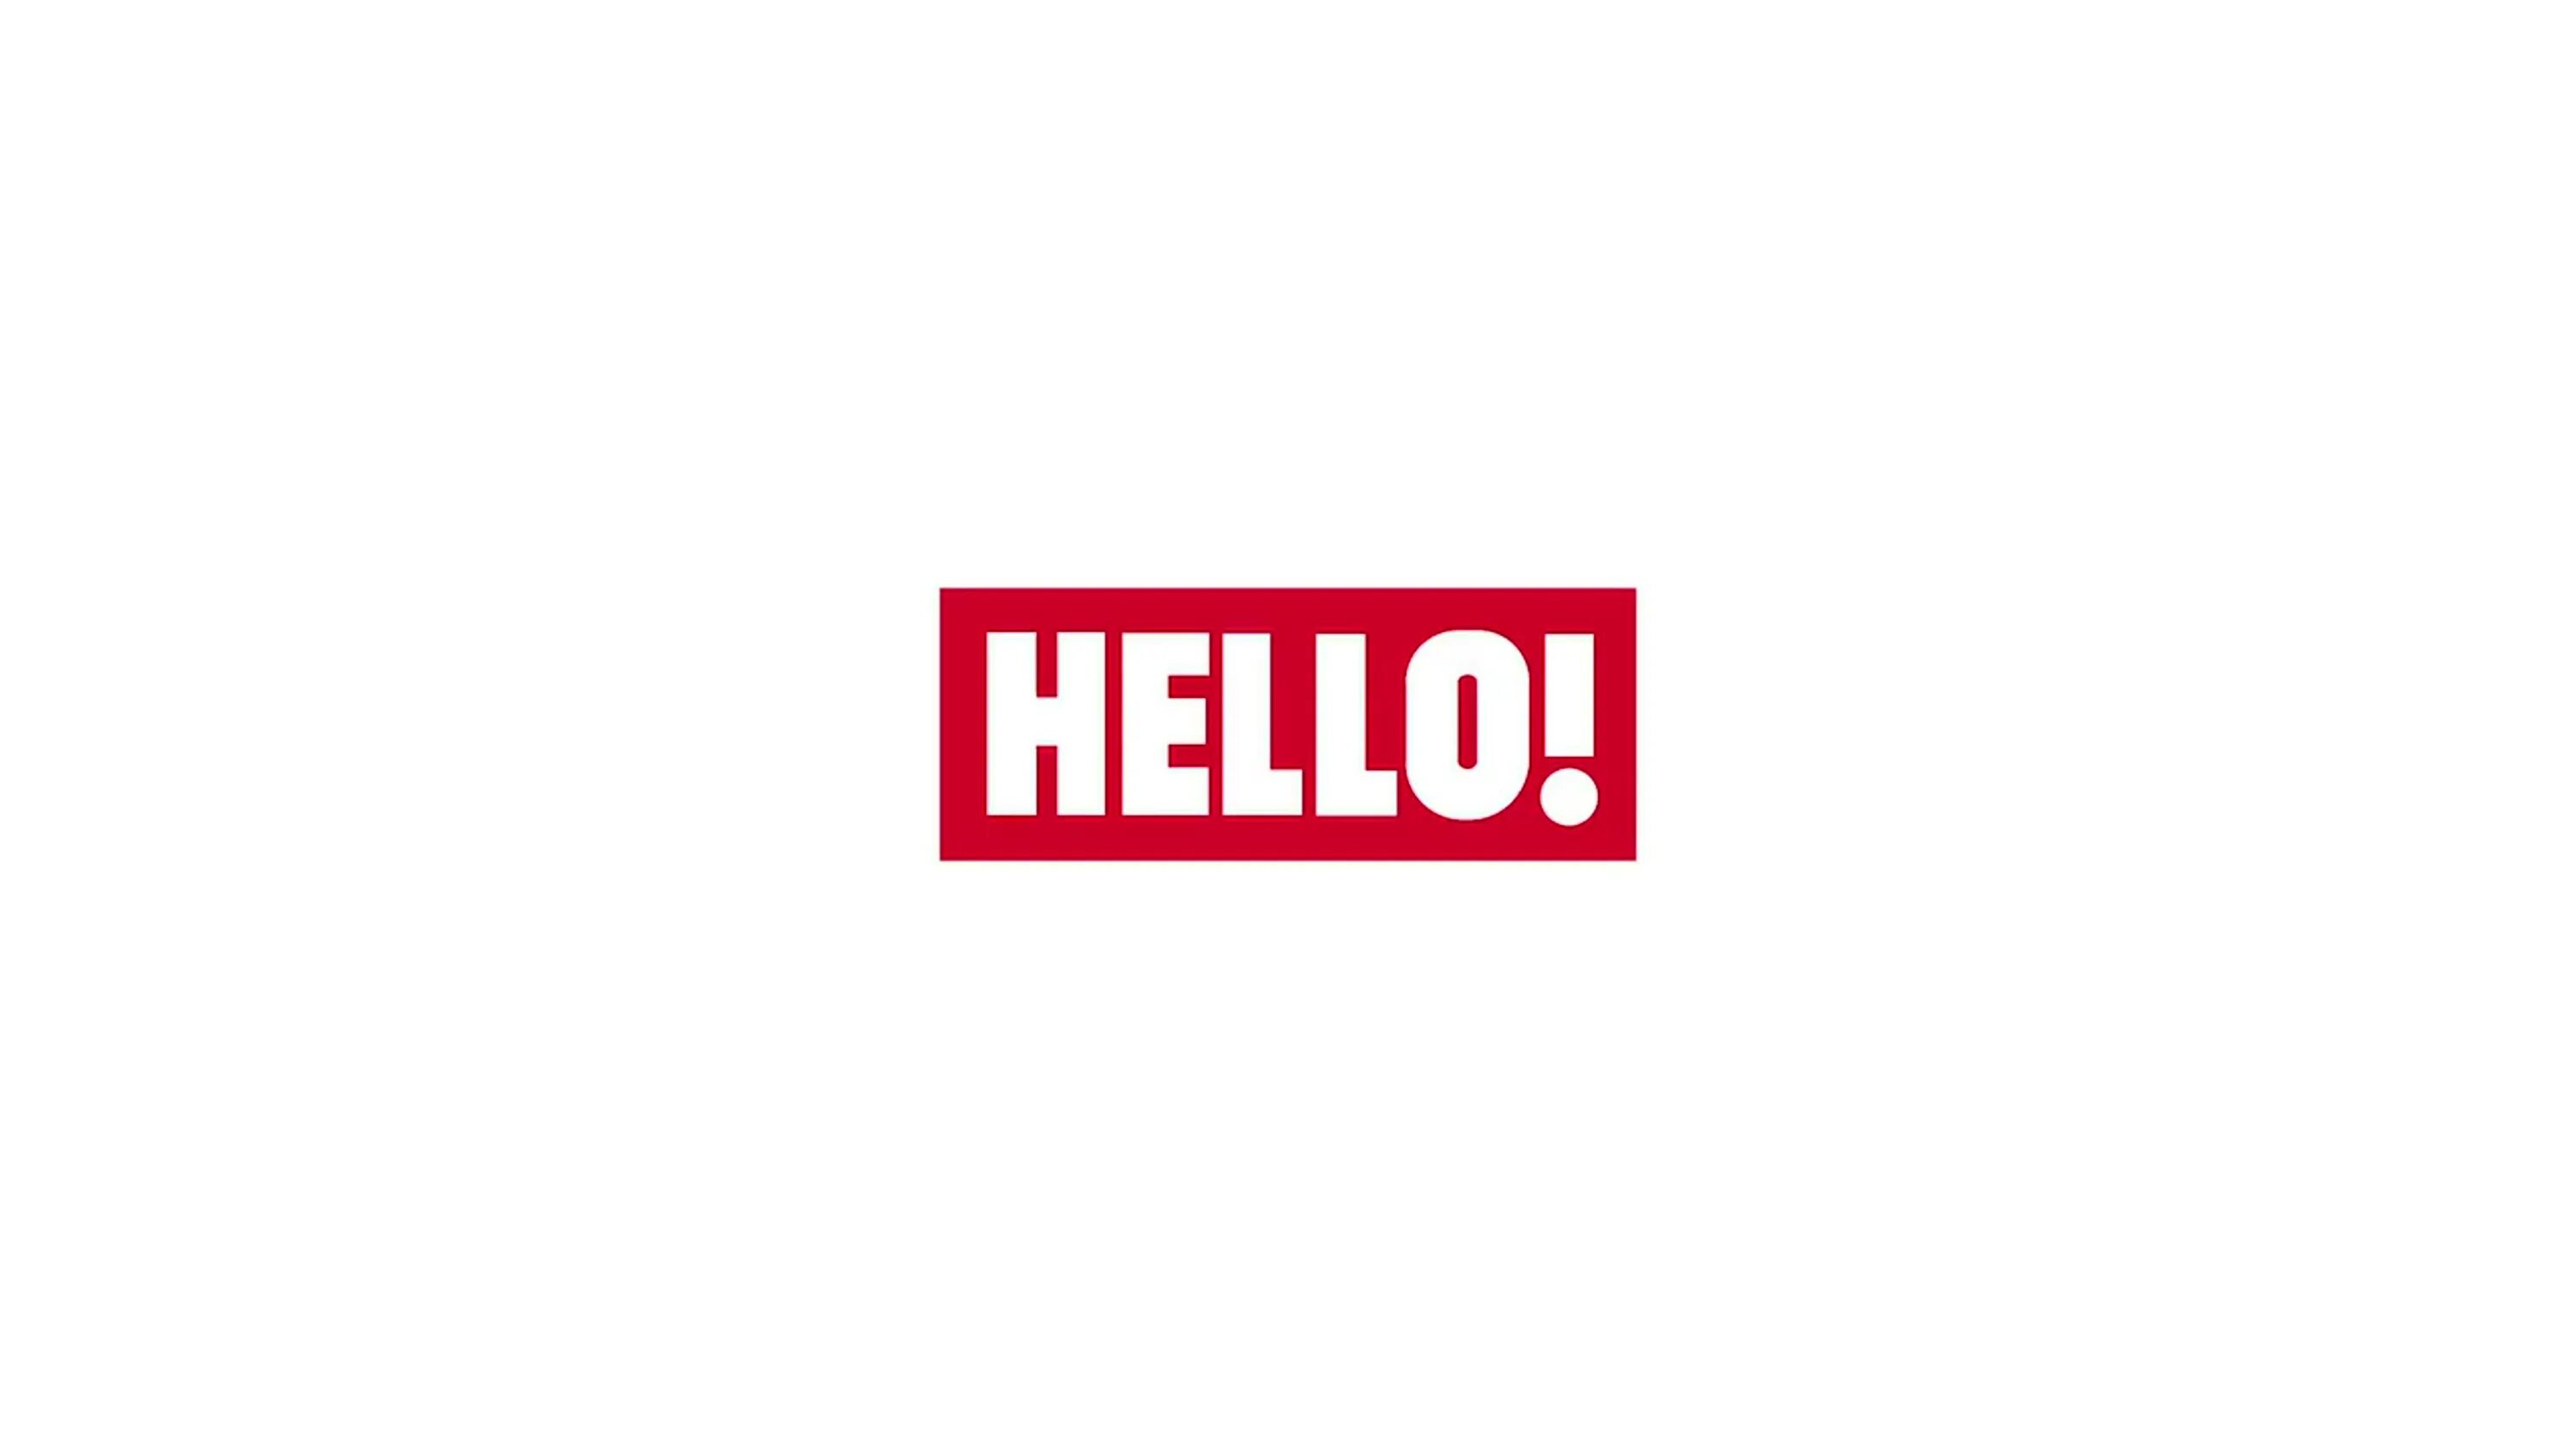 Видео хелло. Хеллоу журнал лого. Журнал hello логотип на прозрачном фоне. Значок журнала hello. Привет лого.